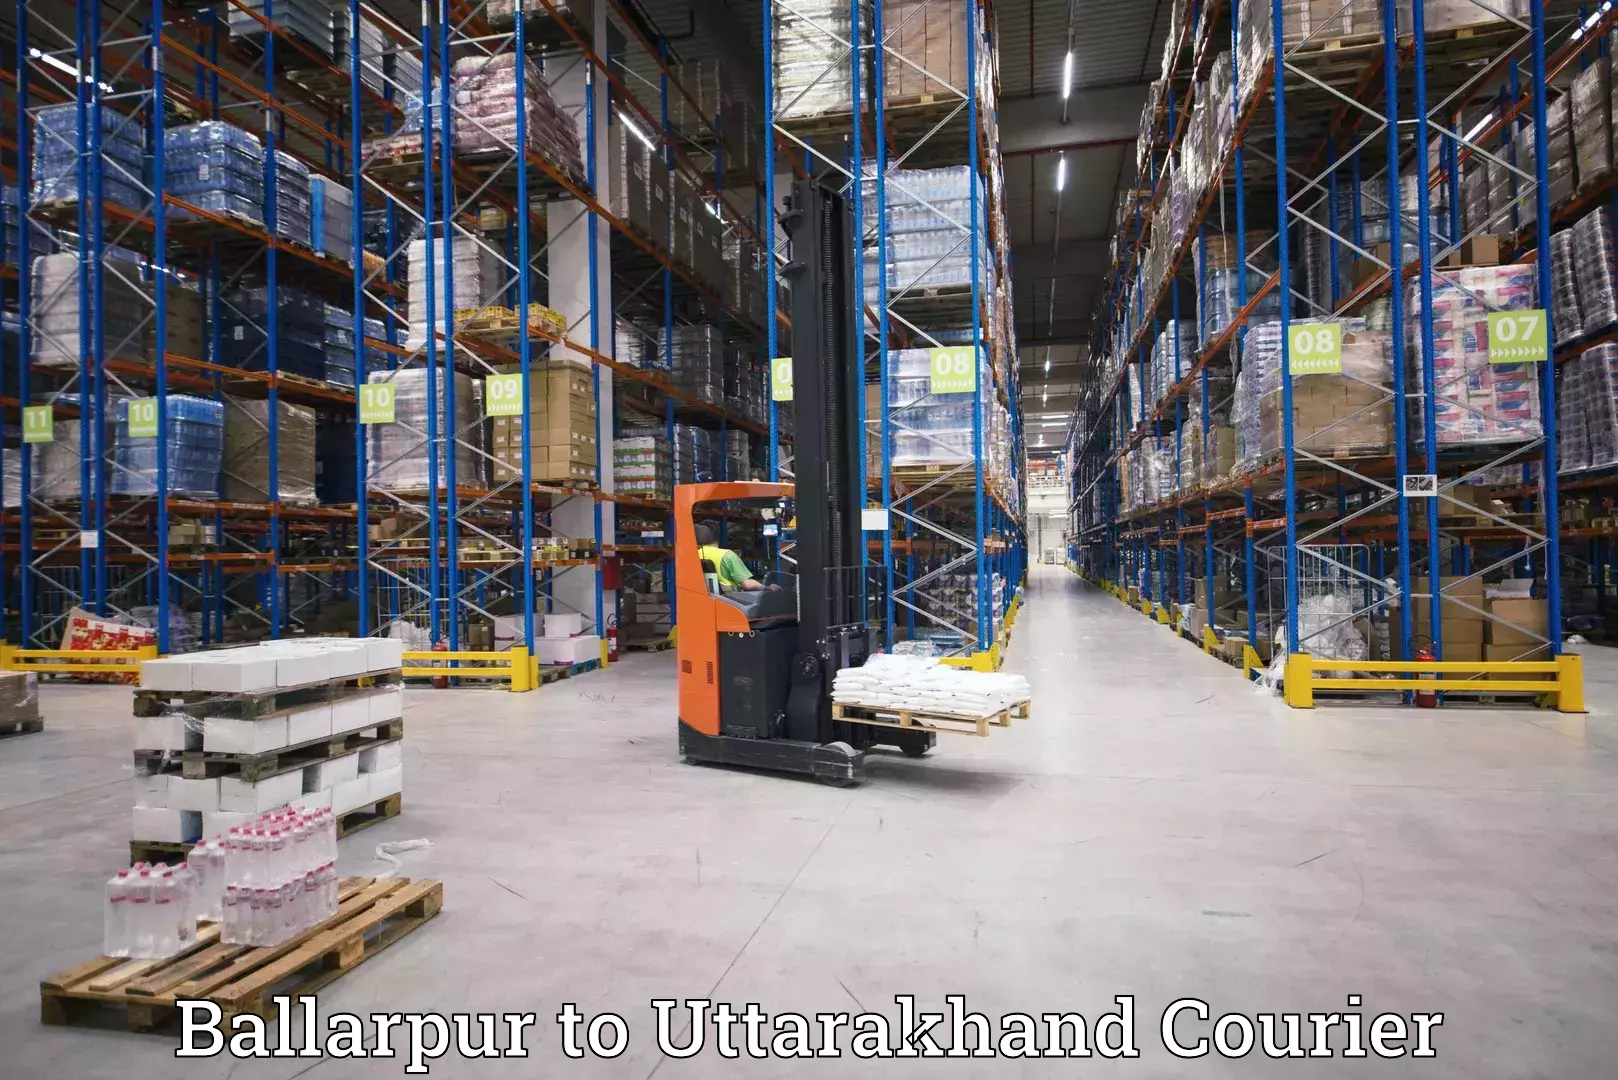 Next-generation courier services Ballarpur to Kotdwara